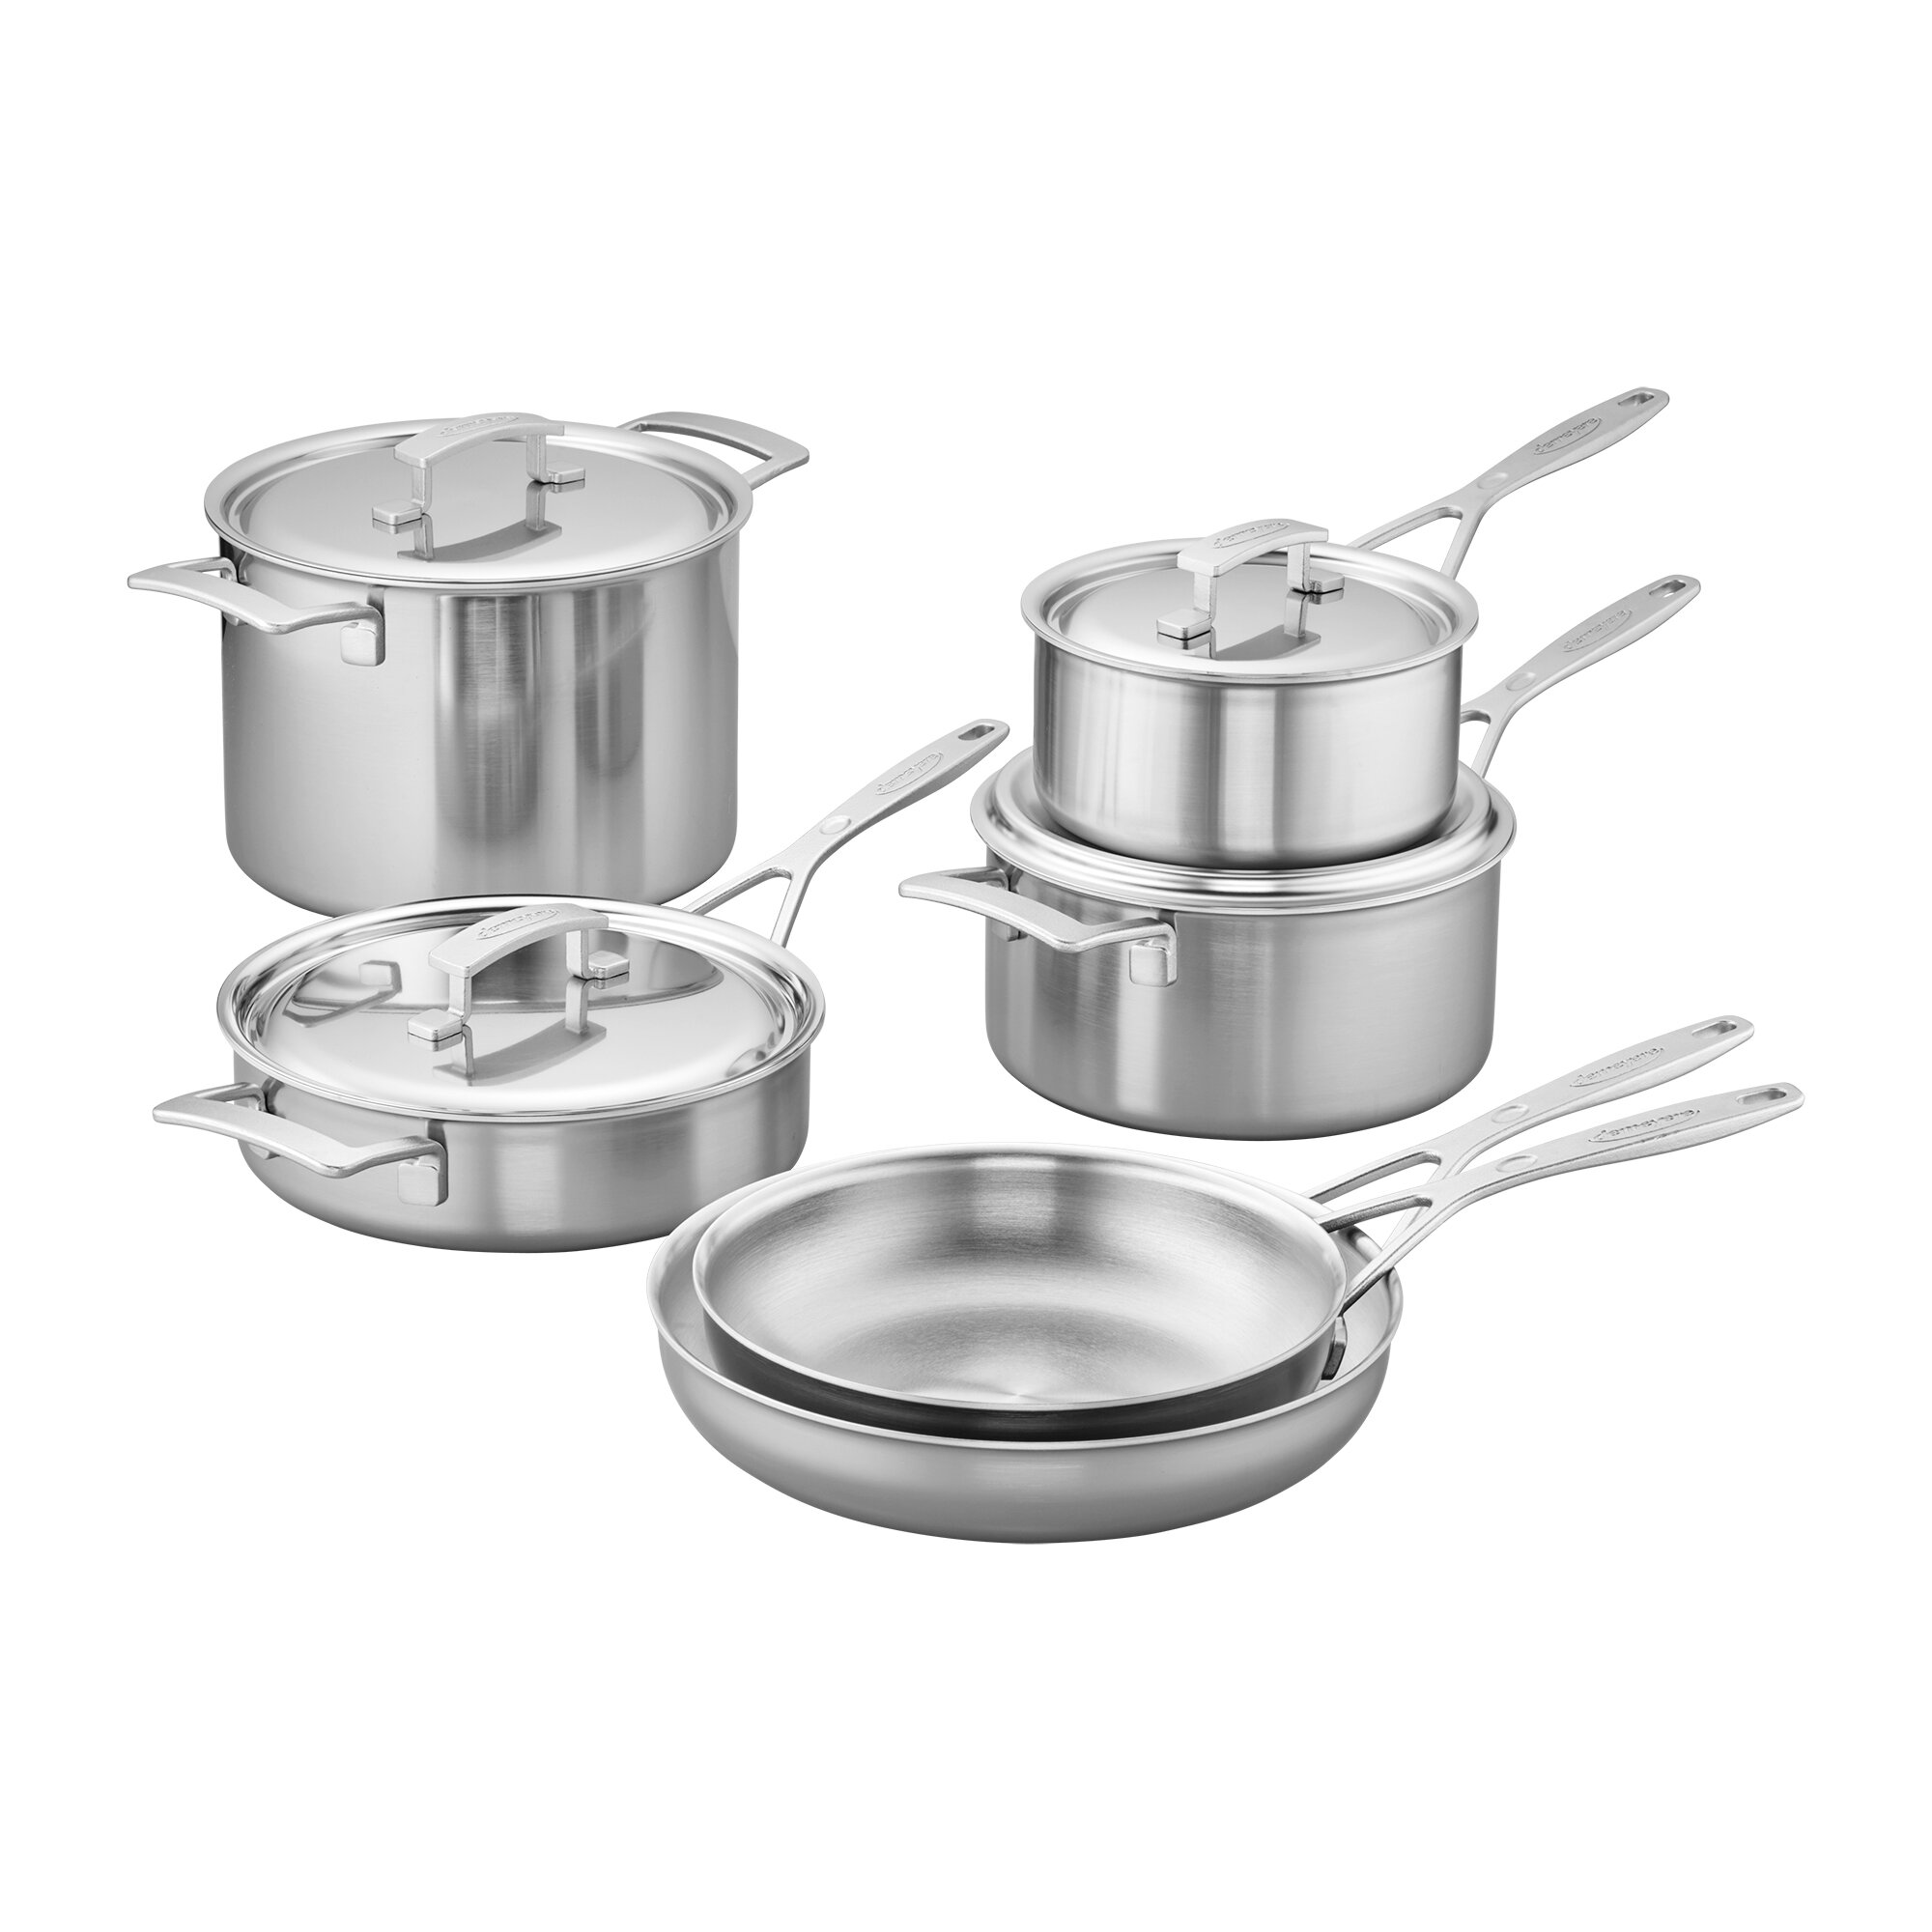 https://assets.wfcdn.com/im/23757966/compr-r85/4516/45161872/demeyere-industry-5-ply-10-piece-stainless-steel-cookware-set.jpg